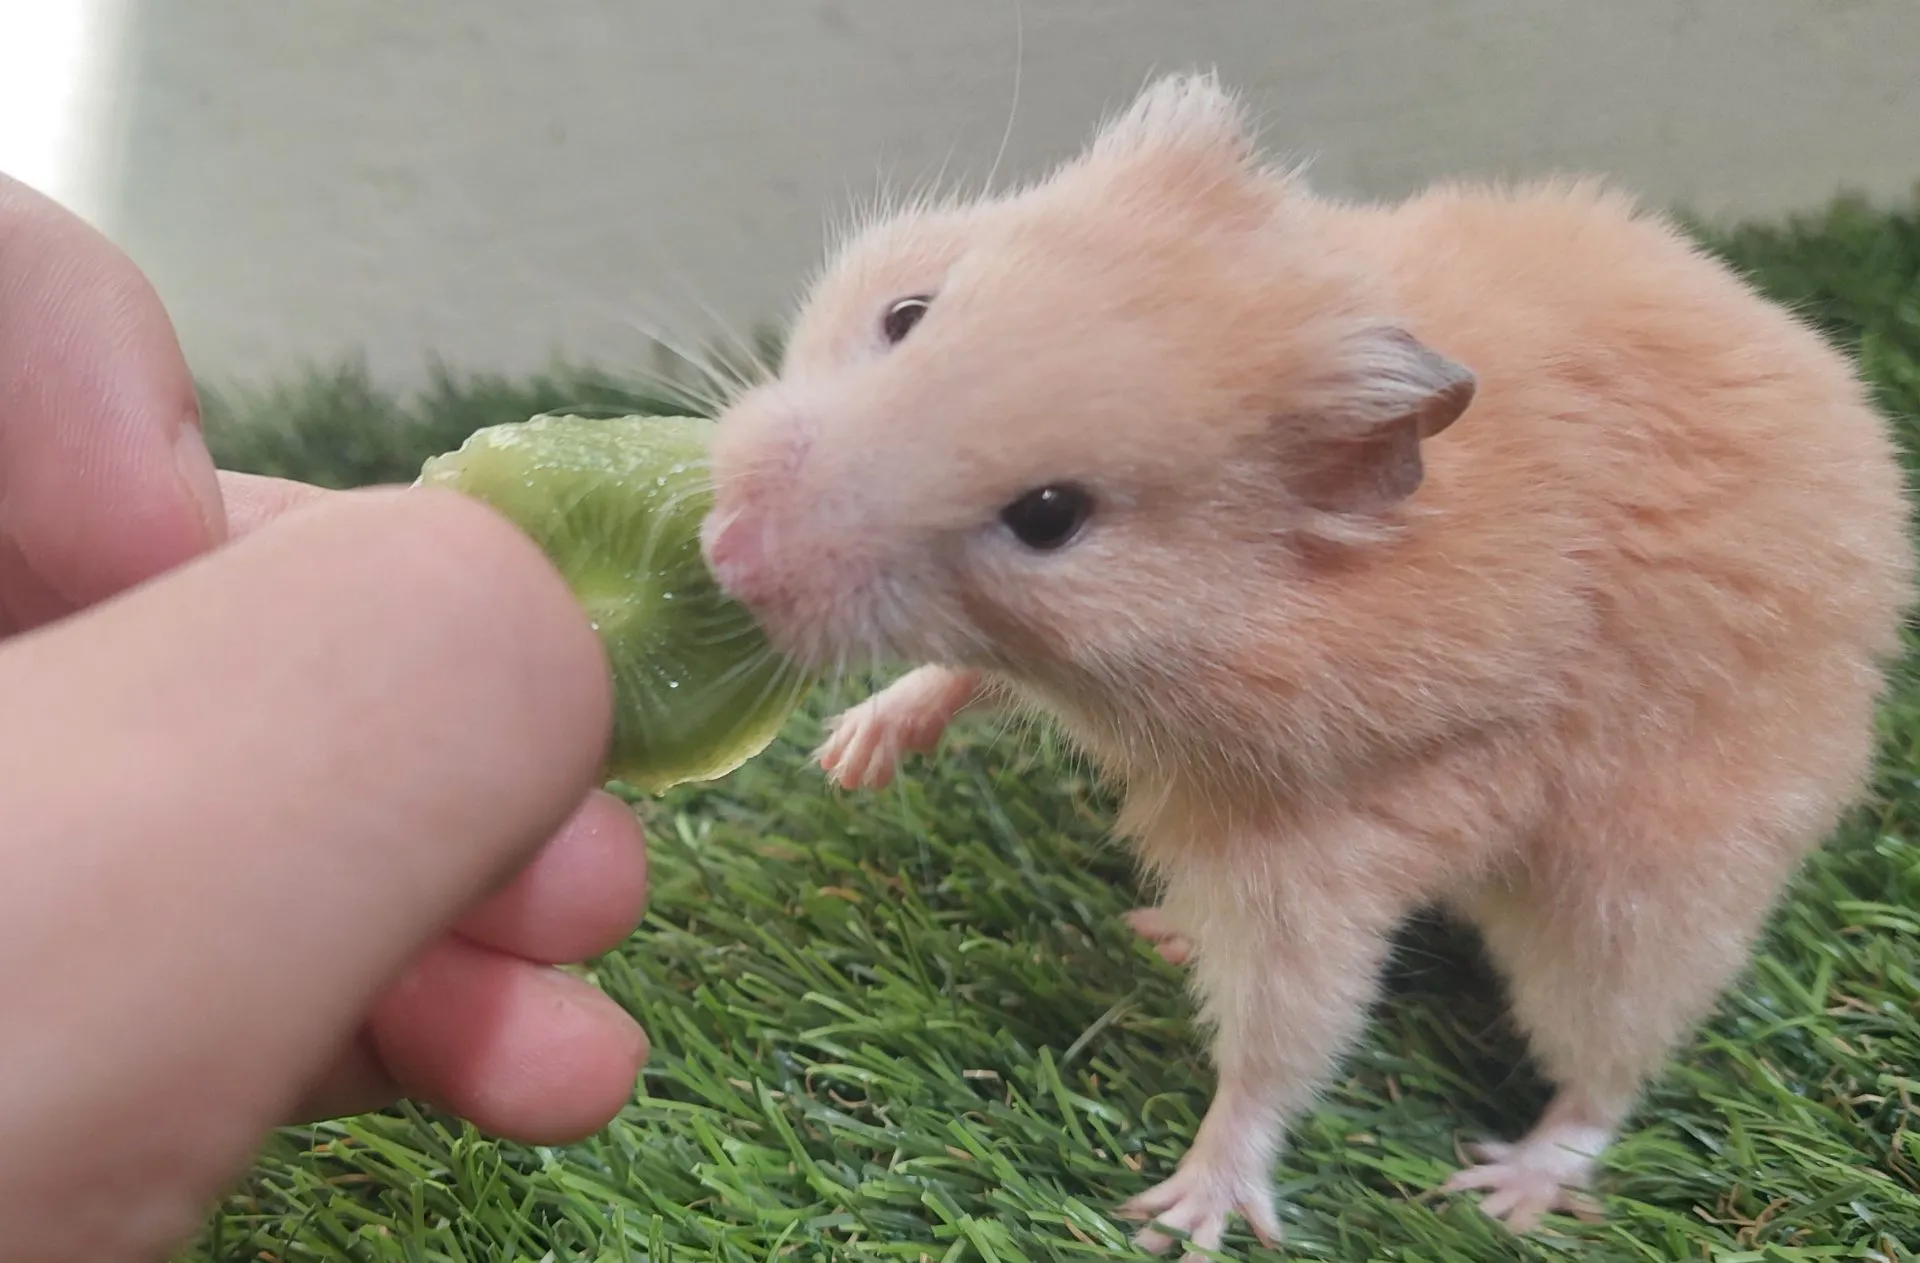 hand-feeding a kiwi to a hamster.